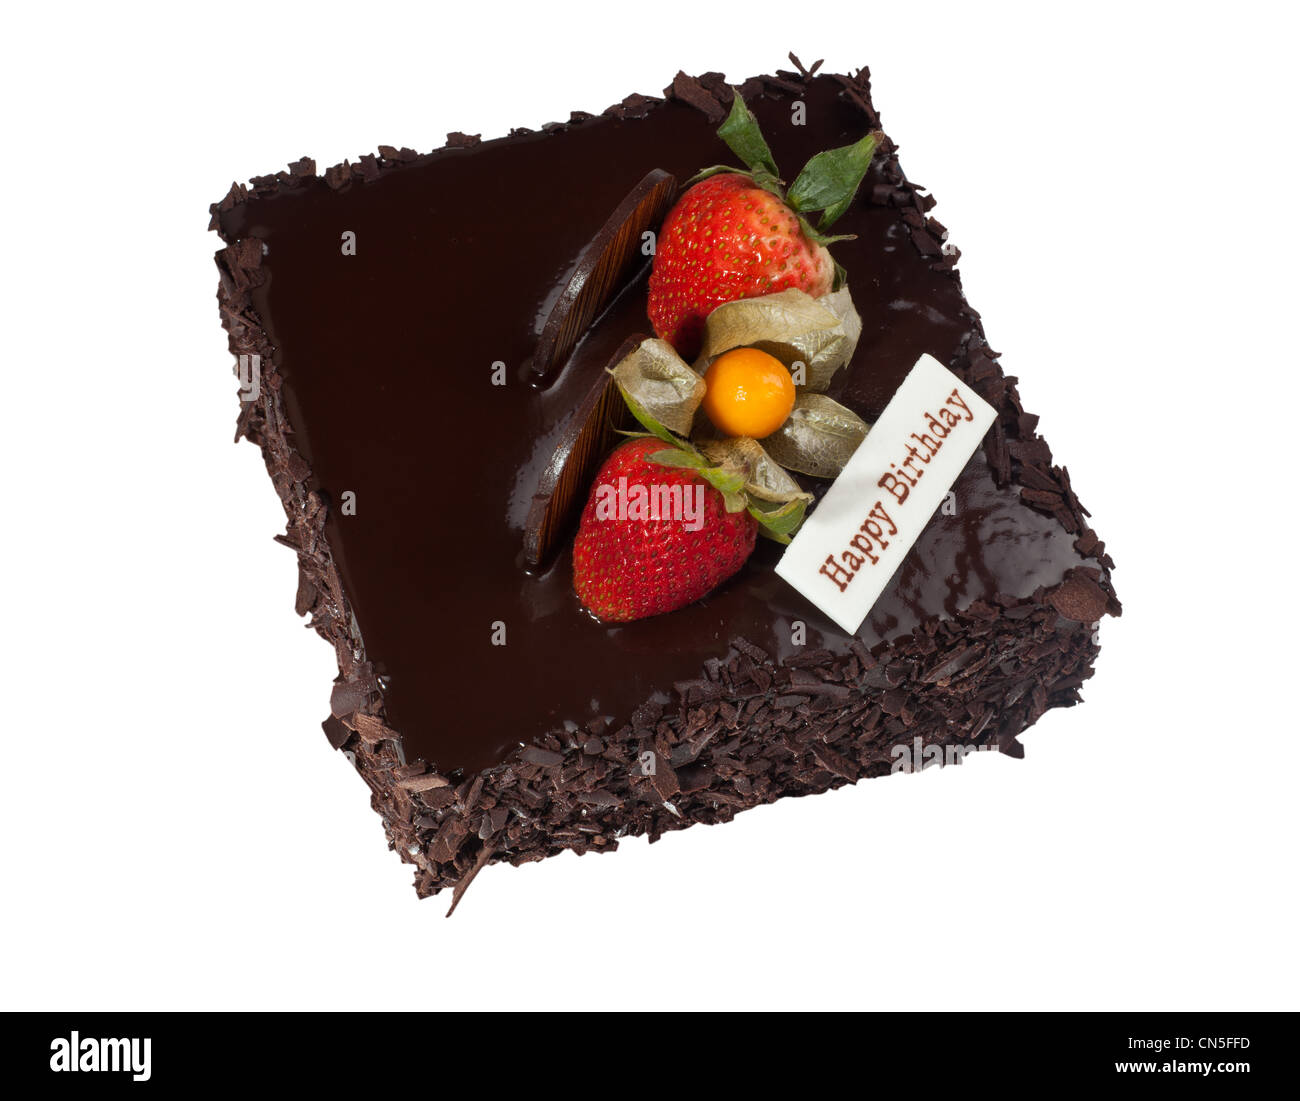 Gâteau au chocolat avec garniture aux fraises isolé sur fond blanc Banque D'Images